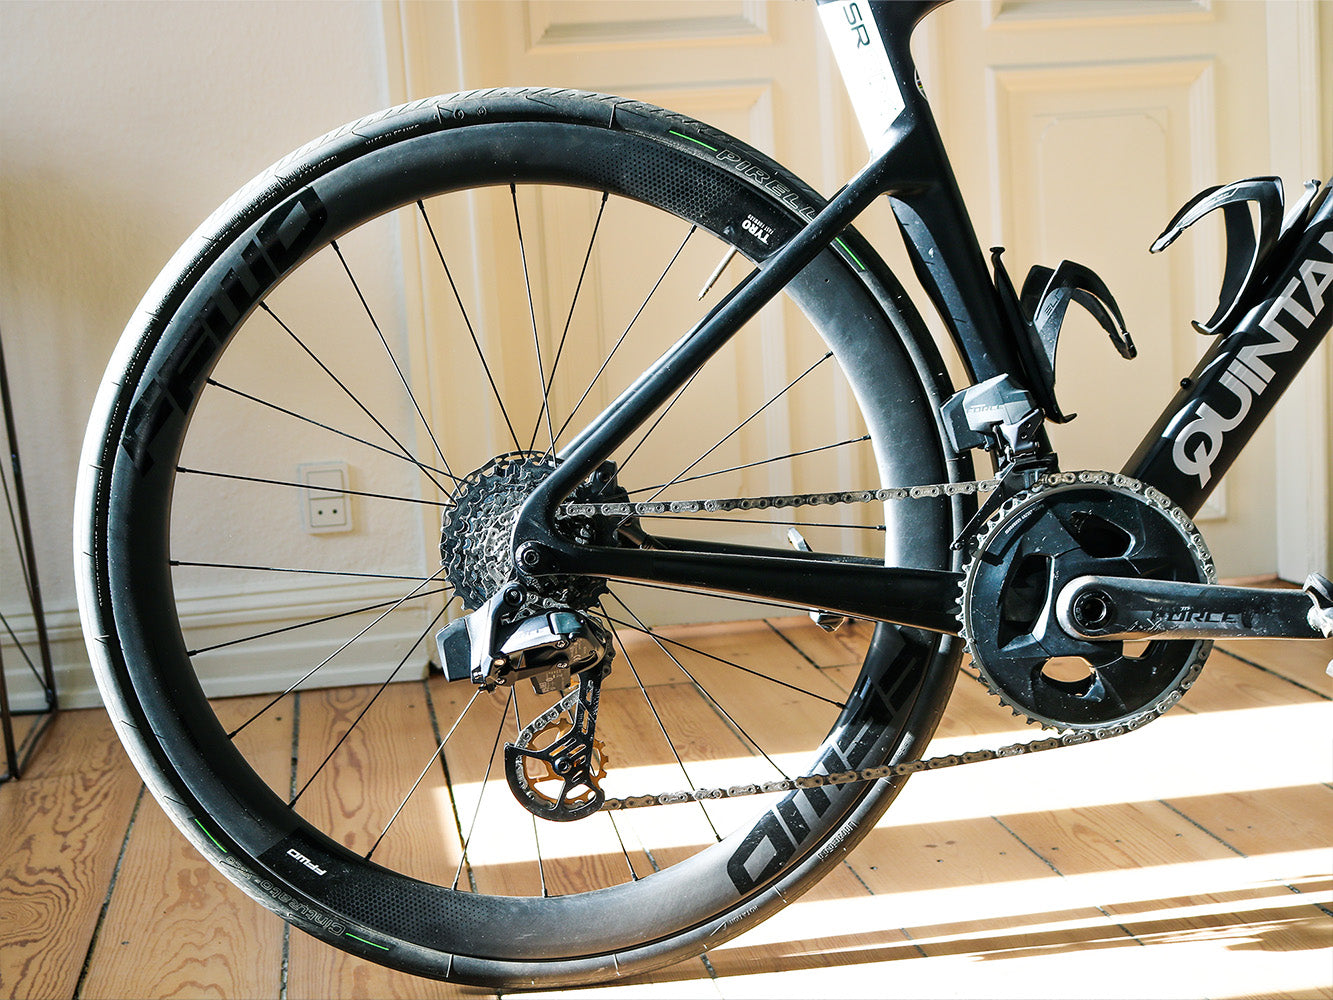 Cykel med fastforward hjul og pirelli dæk